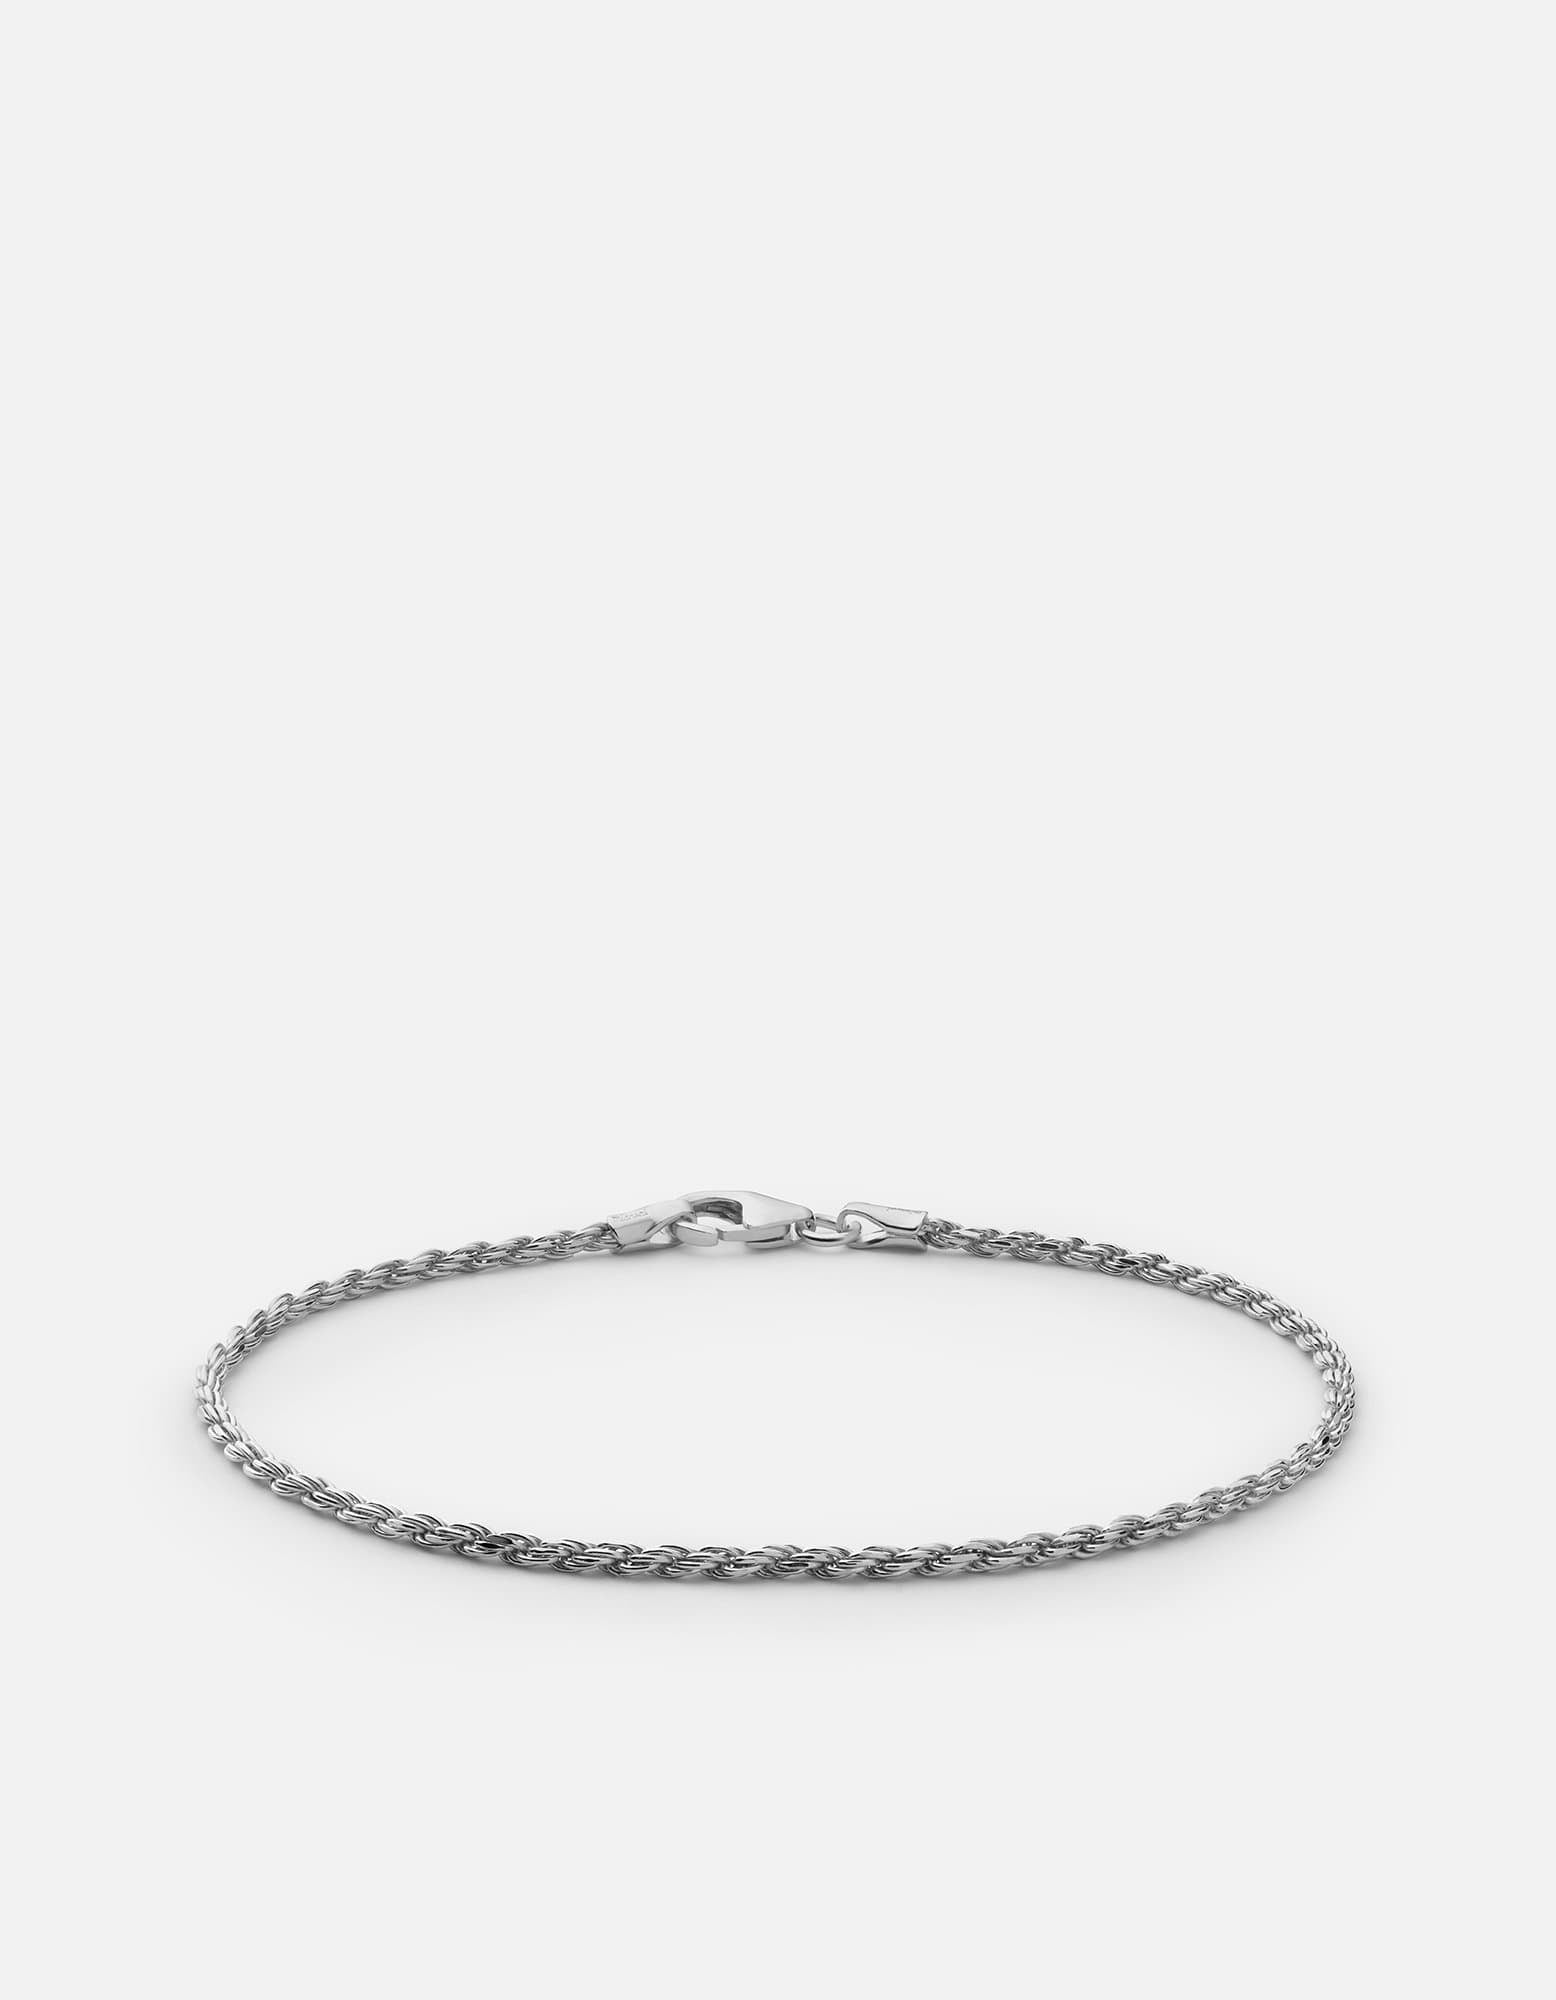 Designer Bracelets For Men / Zapata Jewelers